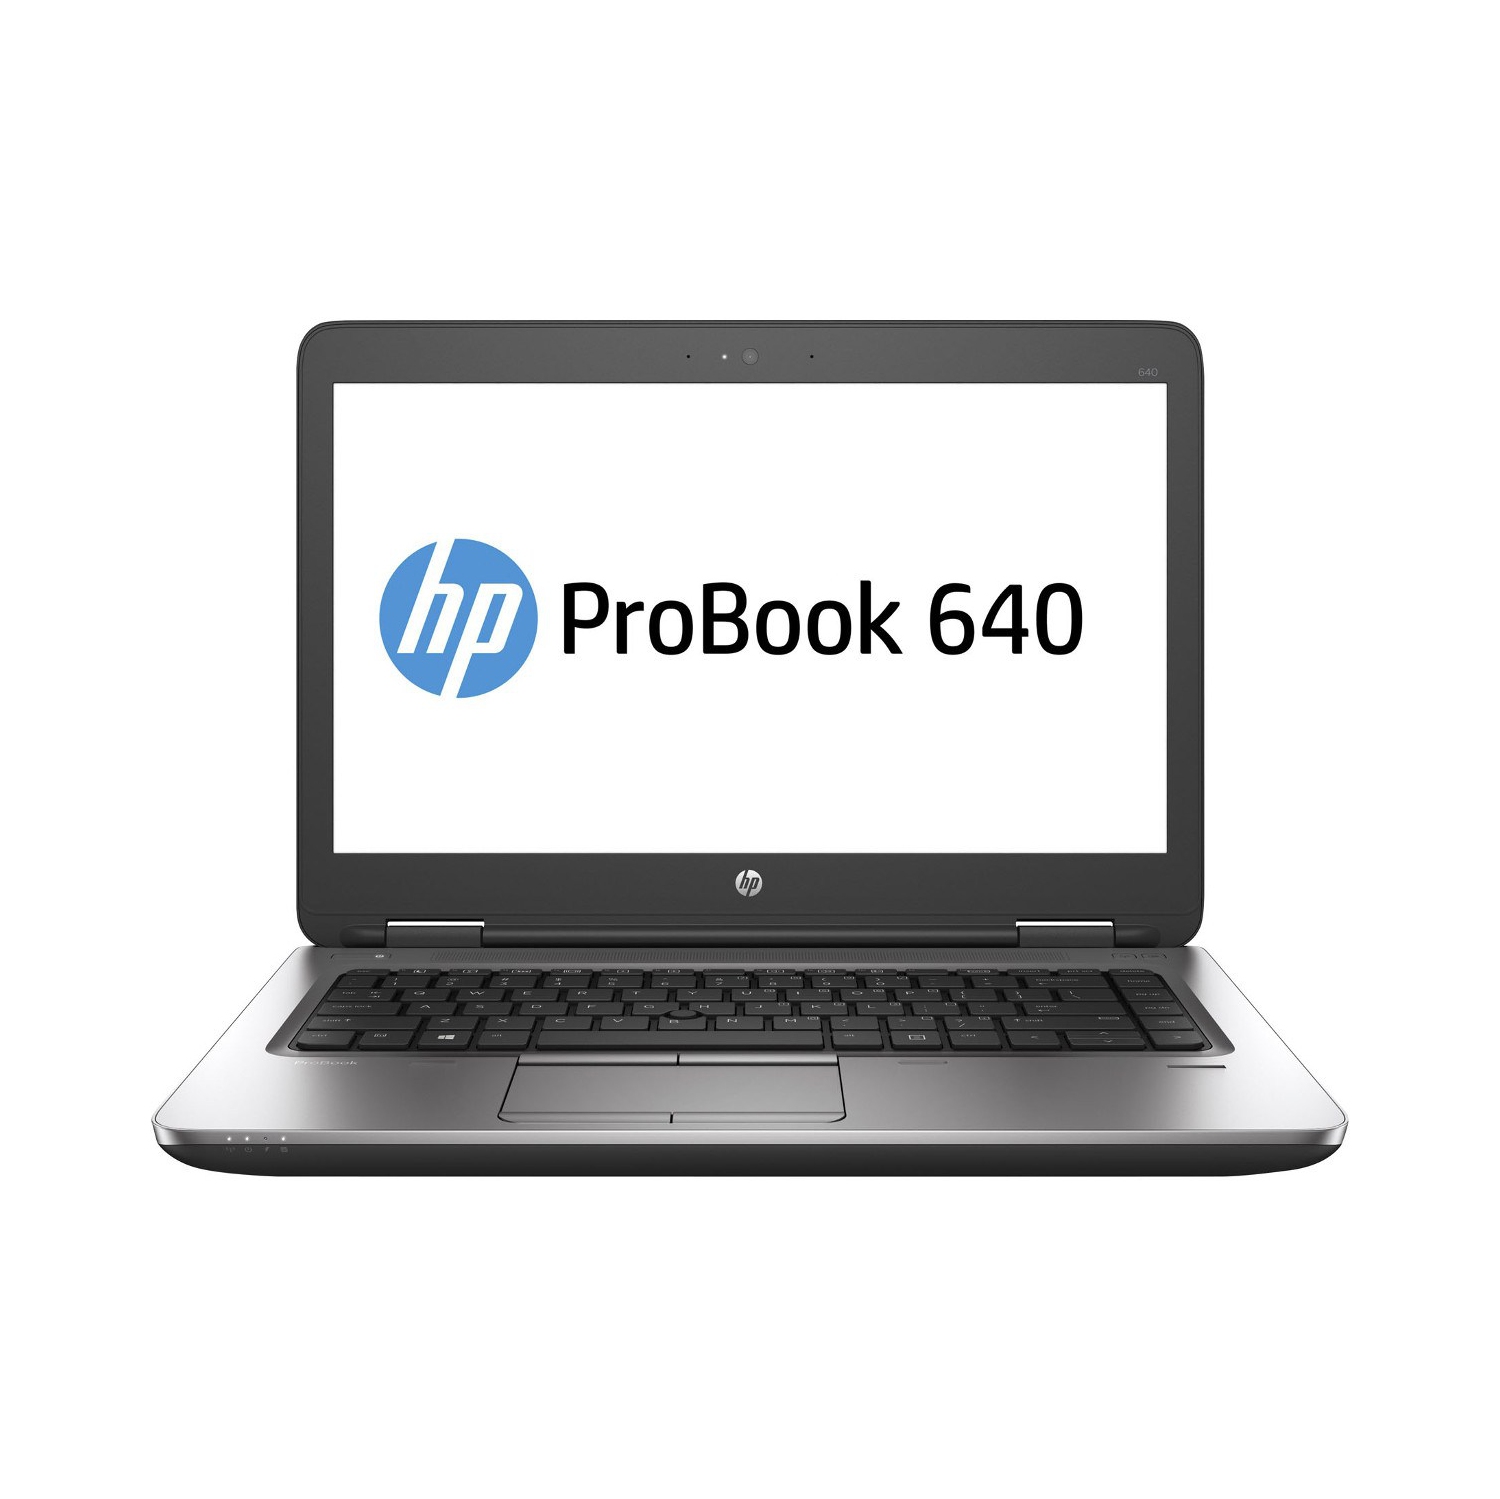 Refurbished (Excellent) - HP ProBook 640 G2 14" Laptop, Intel Core i7 6600U up to 3.4G, 12G DDR4, 500G, VGA, DP, Win10 Pro 64 Bit (EN/FR/ES)